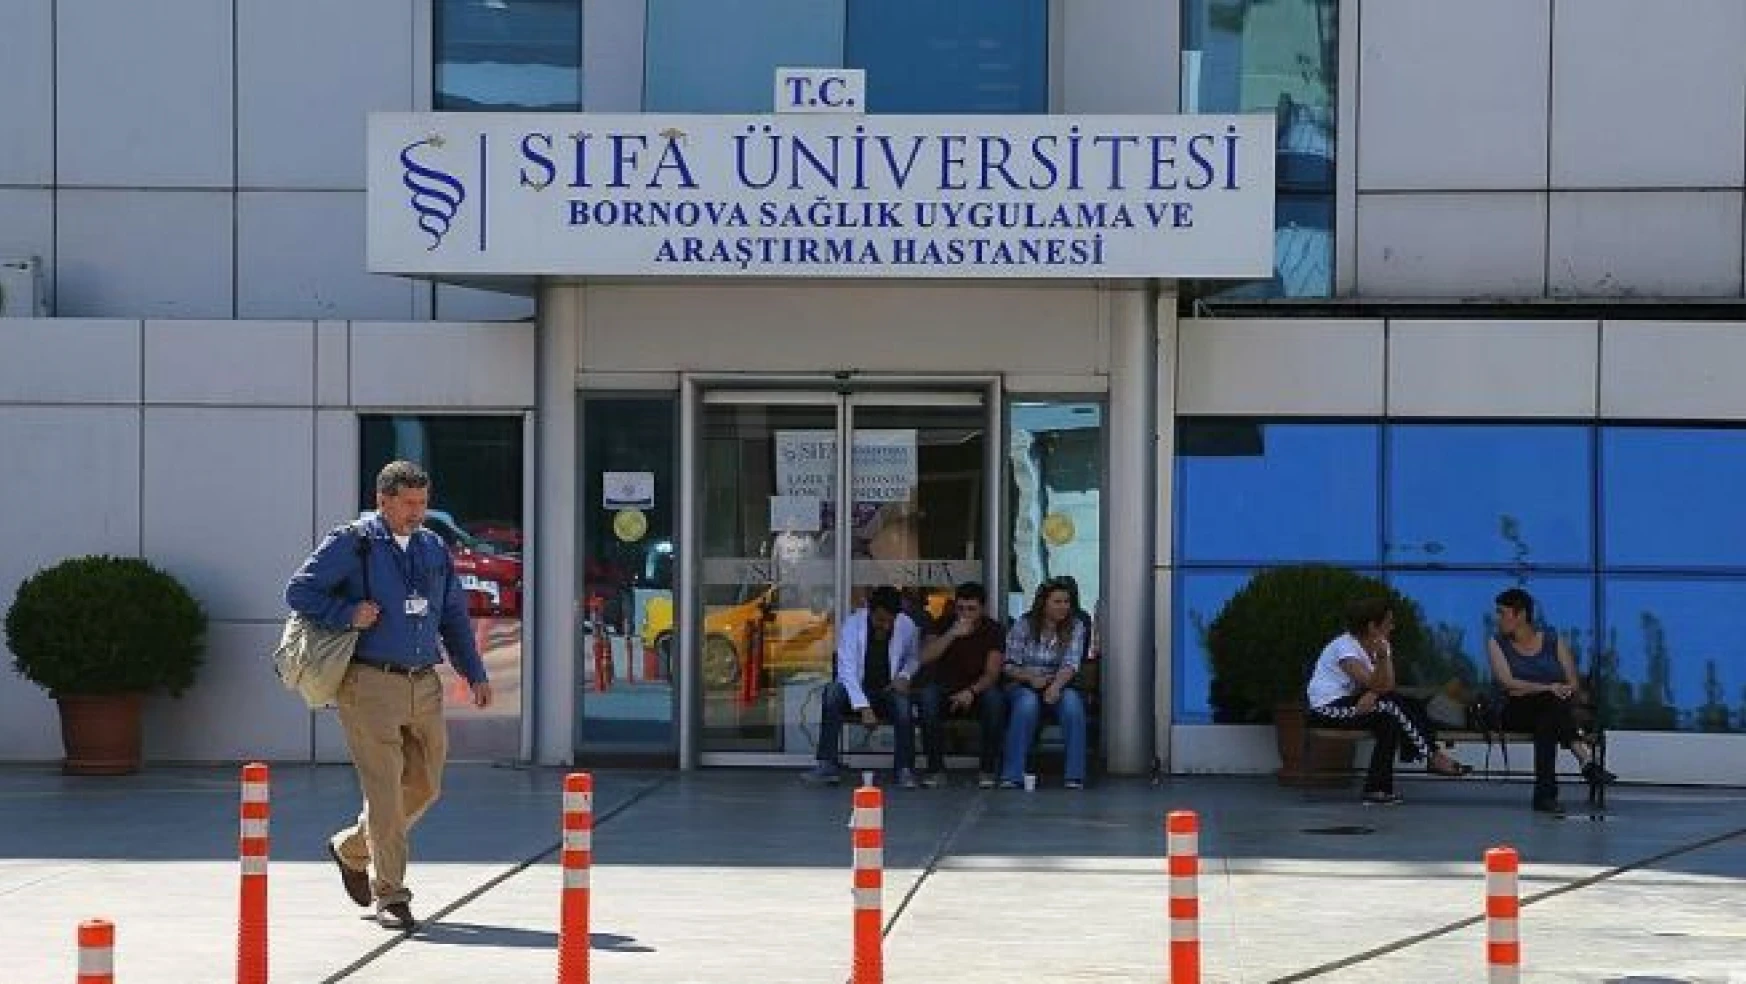 Şifa Üniversitesinde ticari faaliyetler yeniden durduruldu